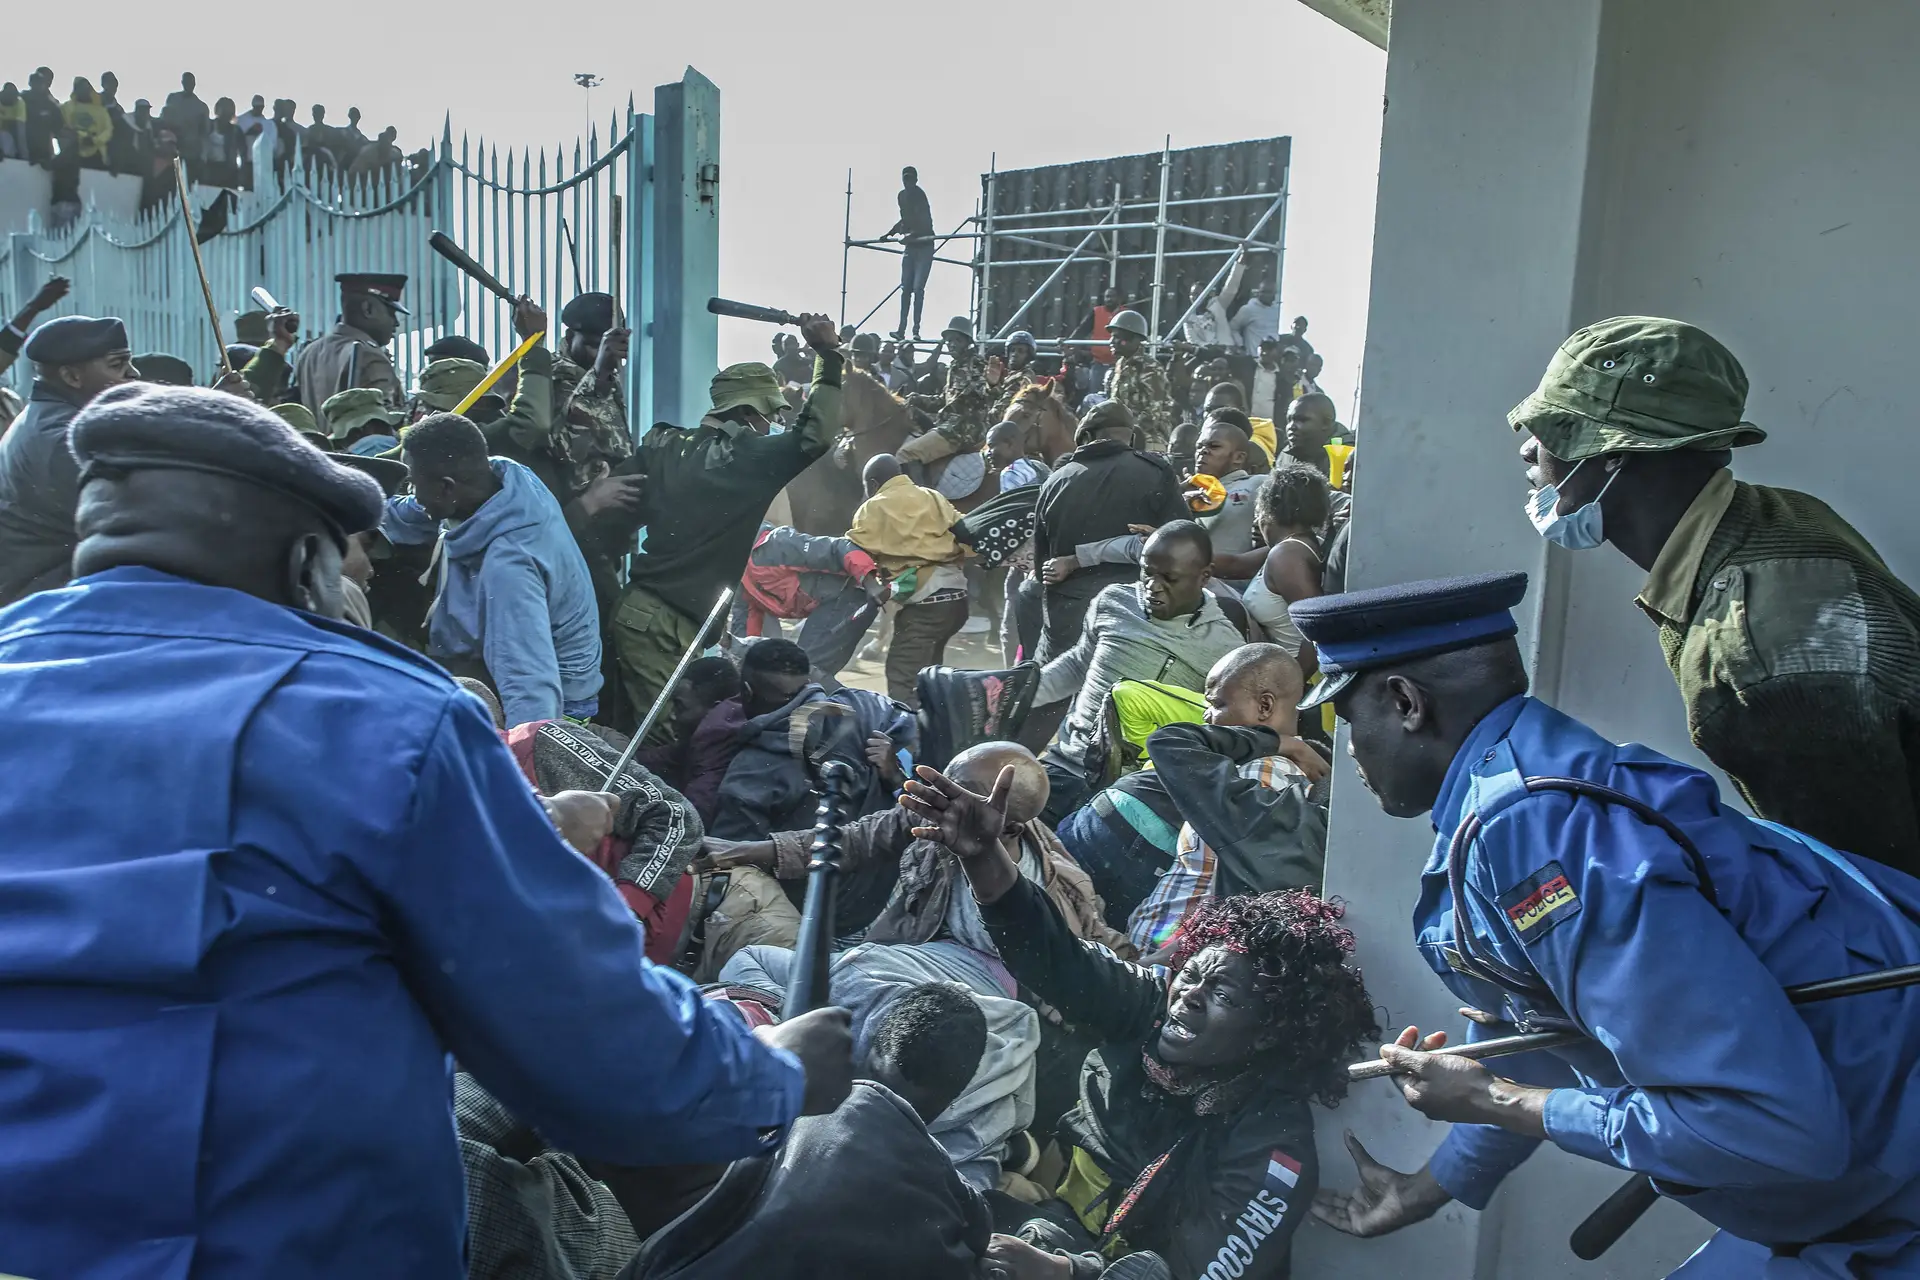 Momentos de caos no Quénia após multidão tentar entrar em estádio sobrelotado